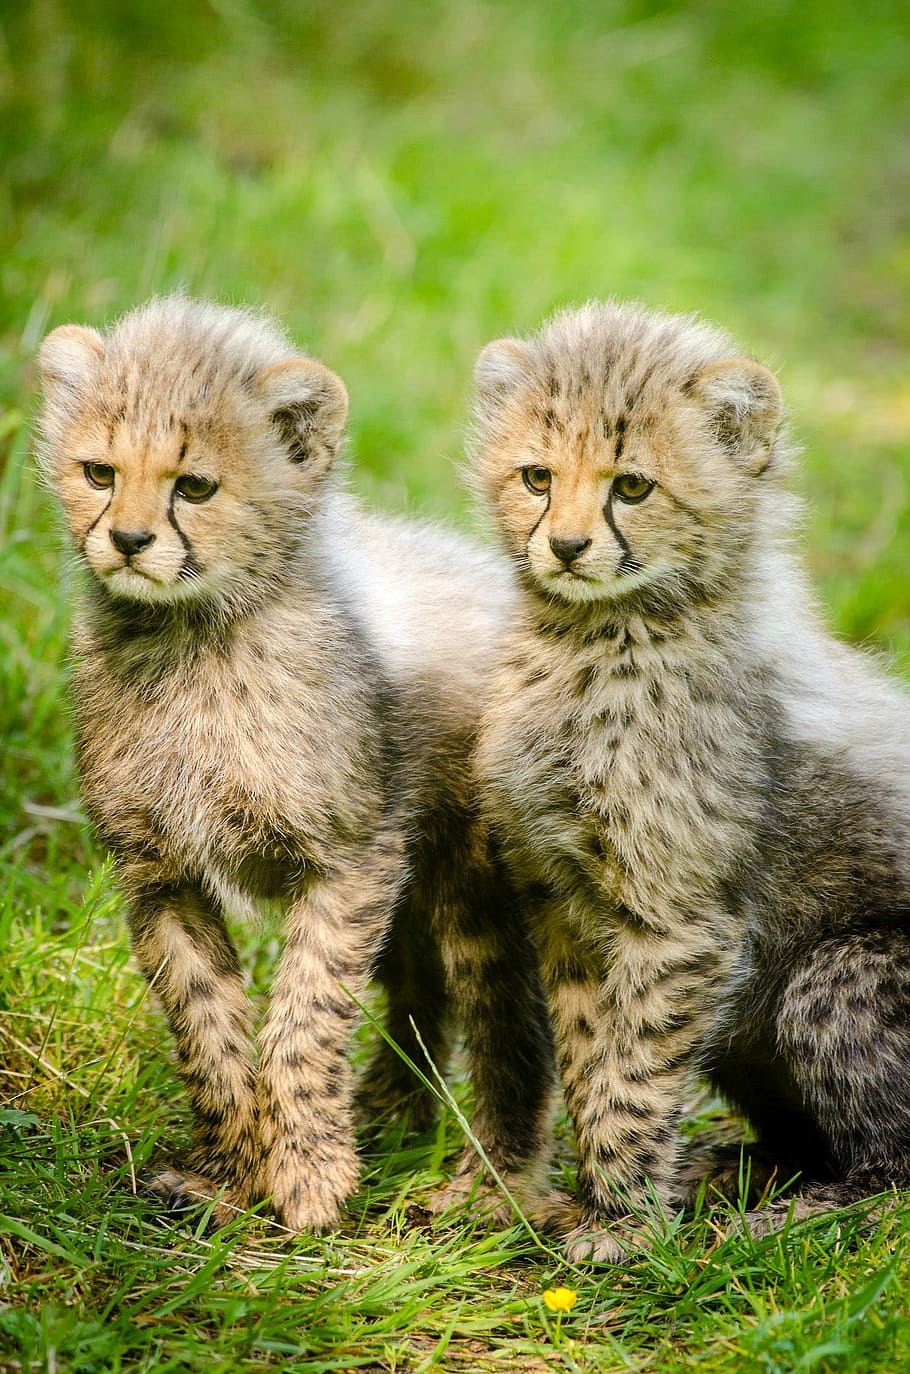 HD wallpaper: Cheetah Cubs, animals, big cat, photo, mammals, public domain  | Wallpaper Flare